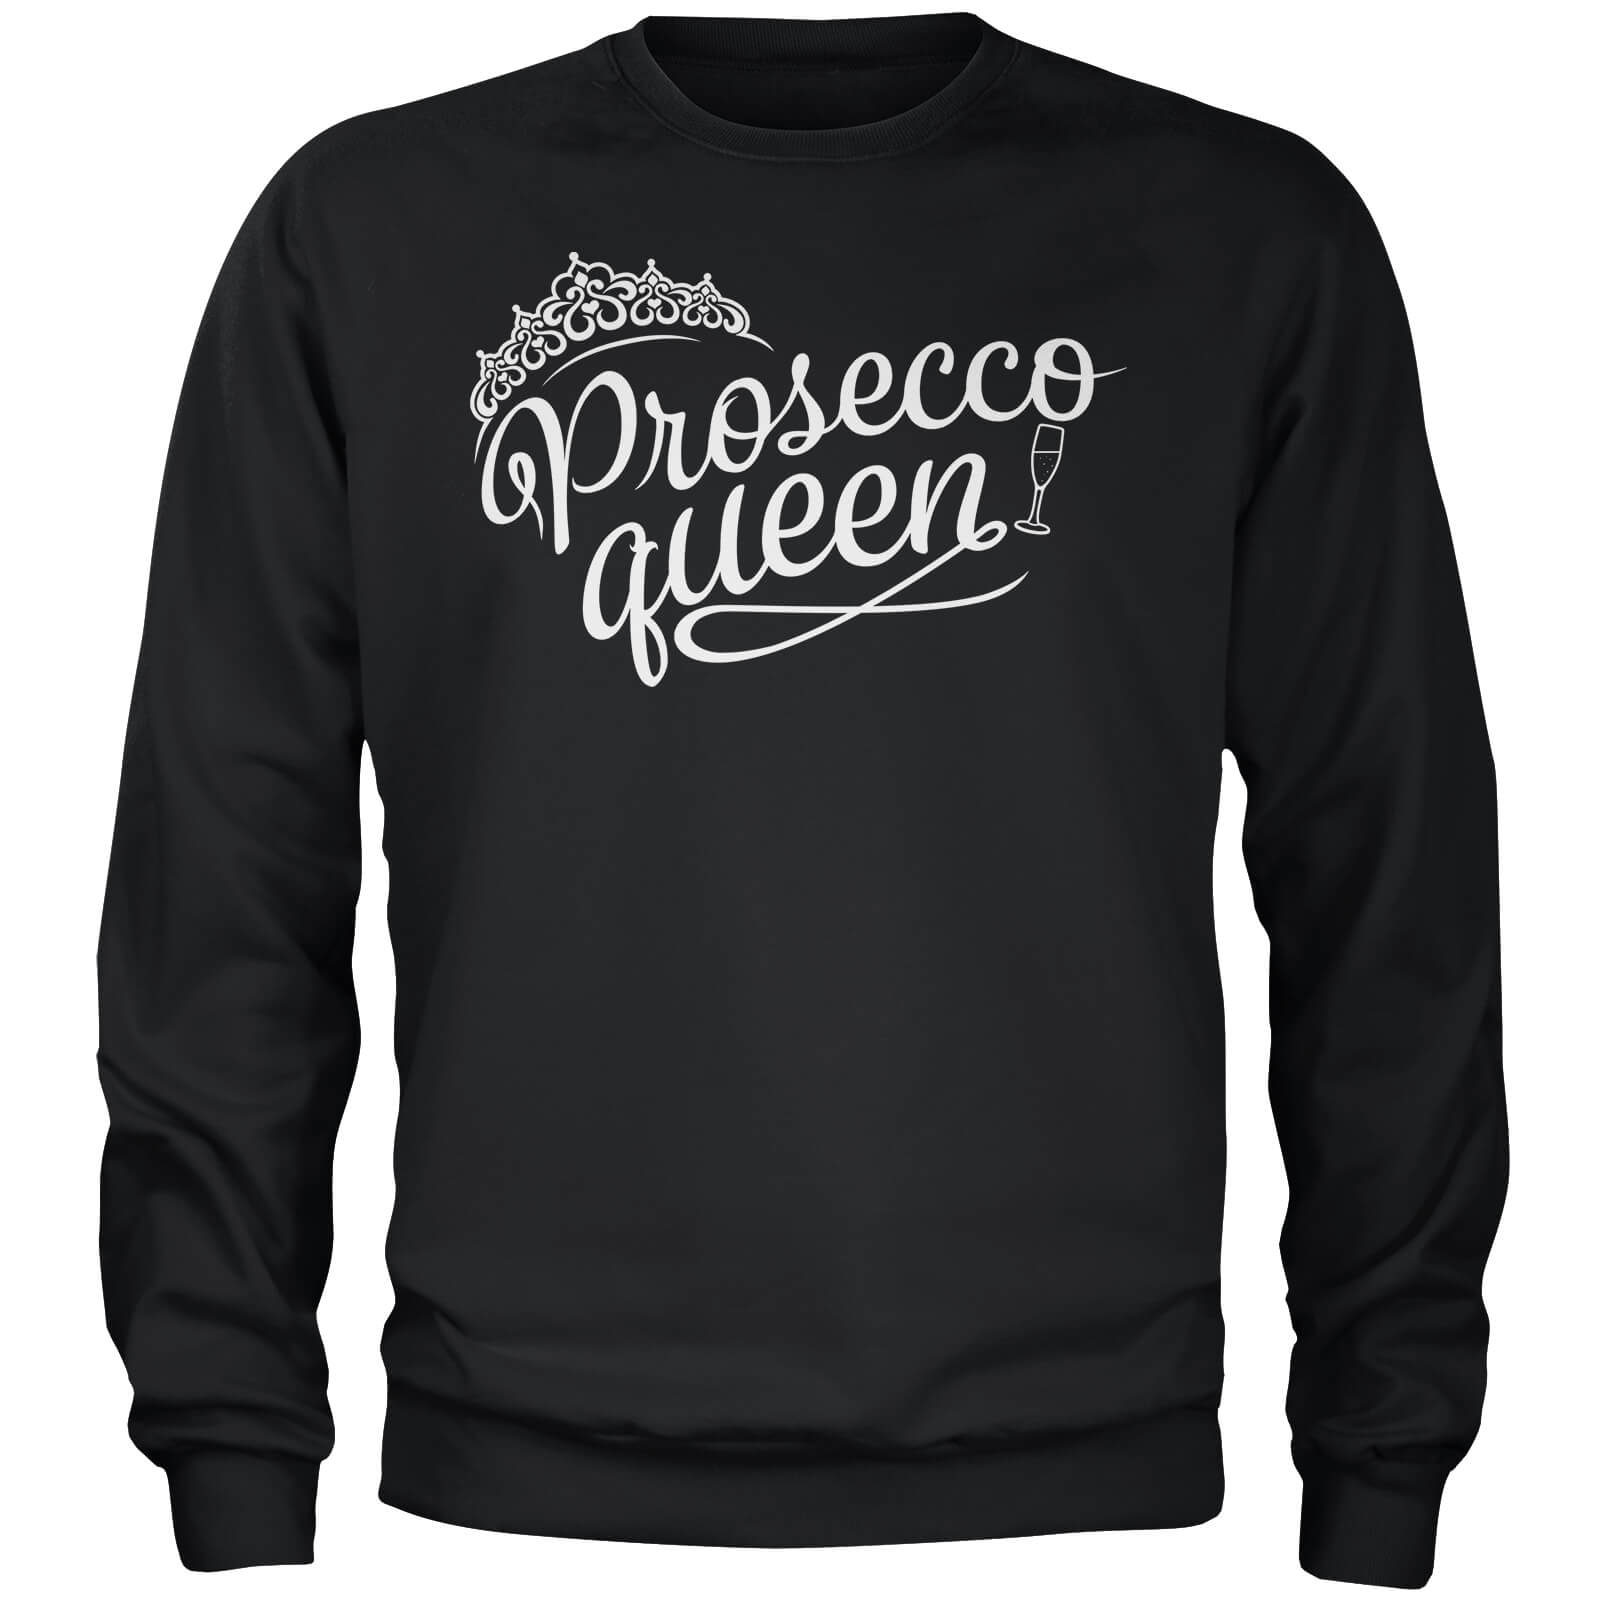 Prosecco Queen Black Sweatshirt - S - Black